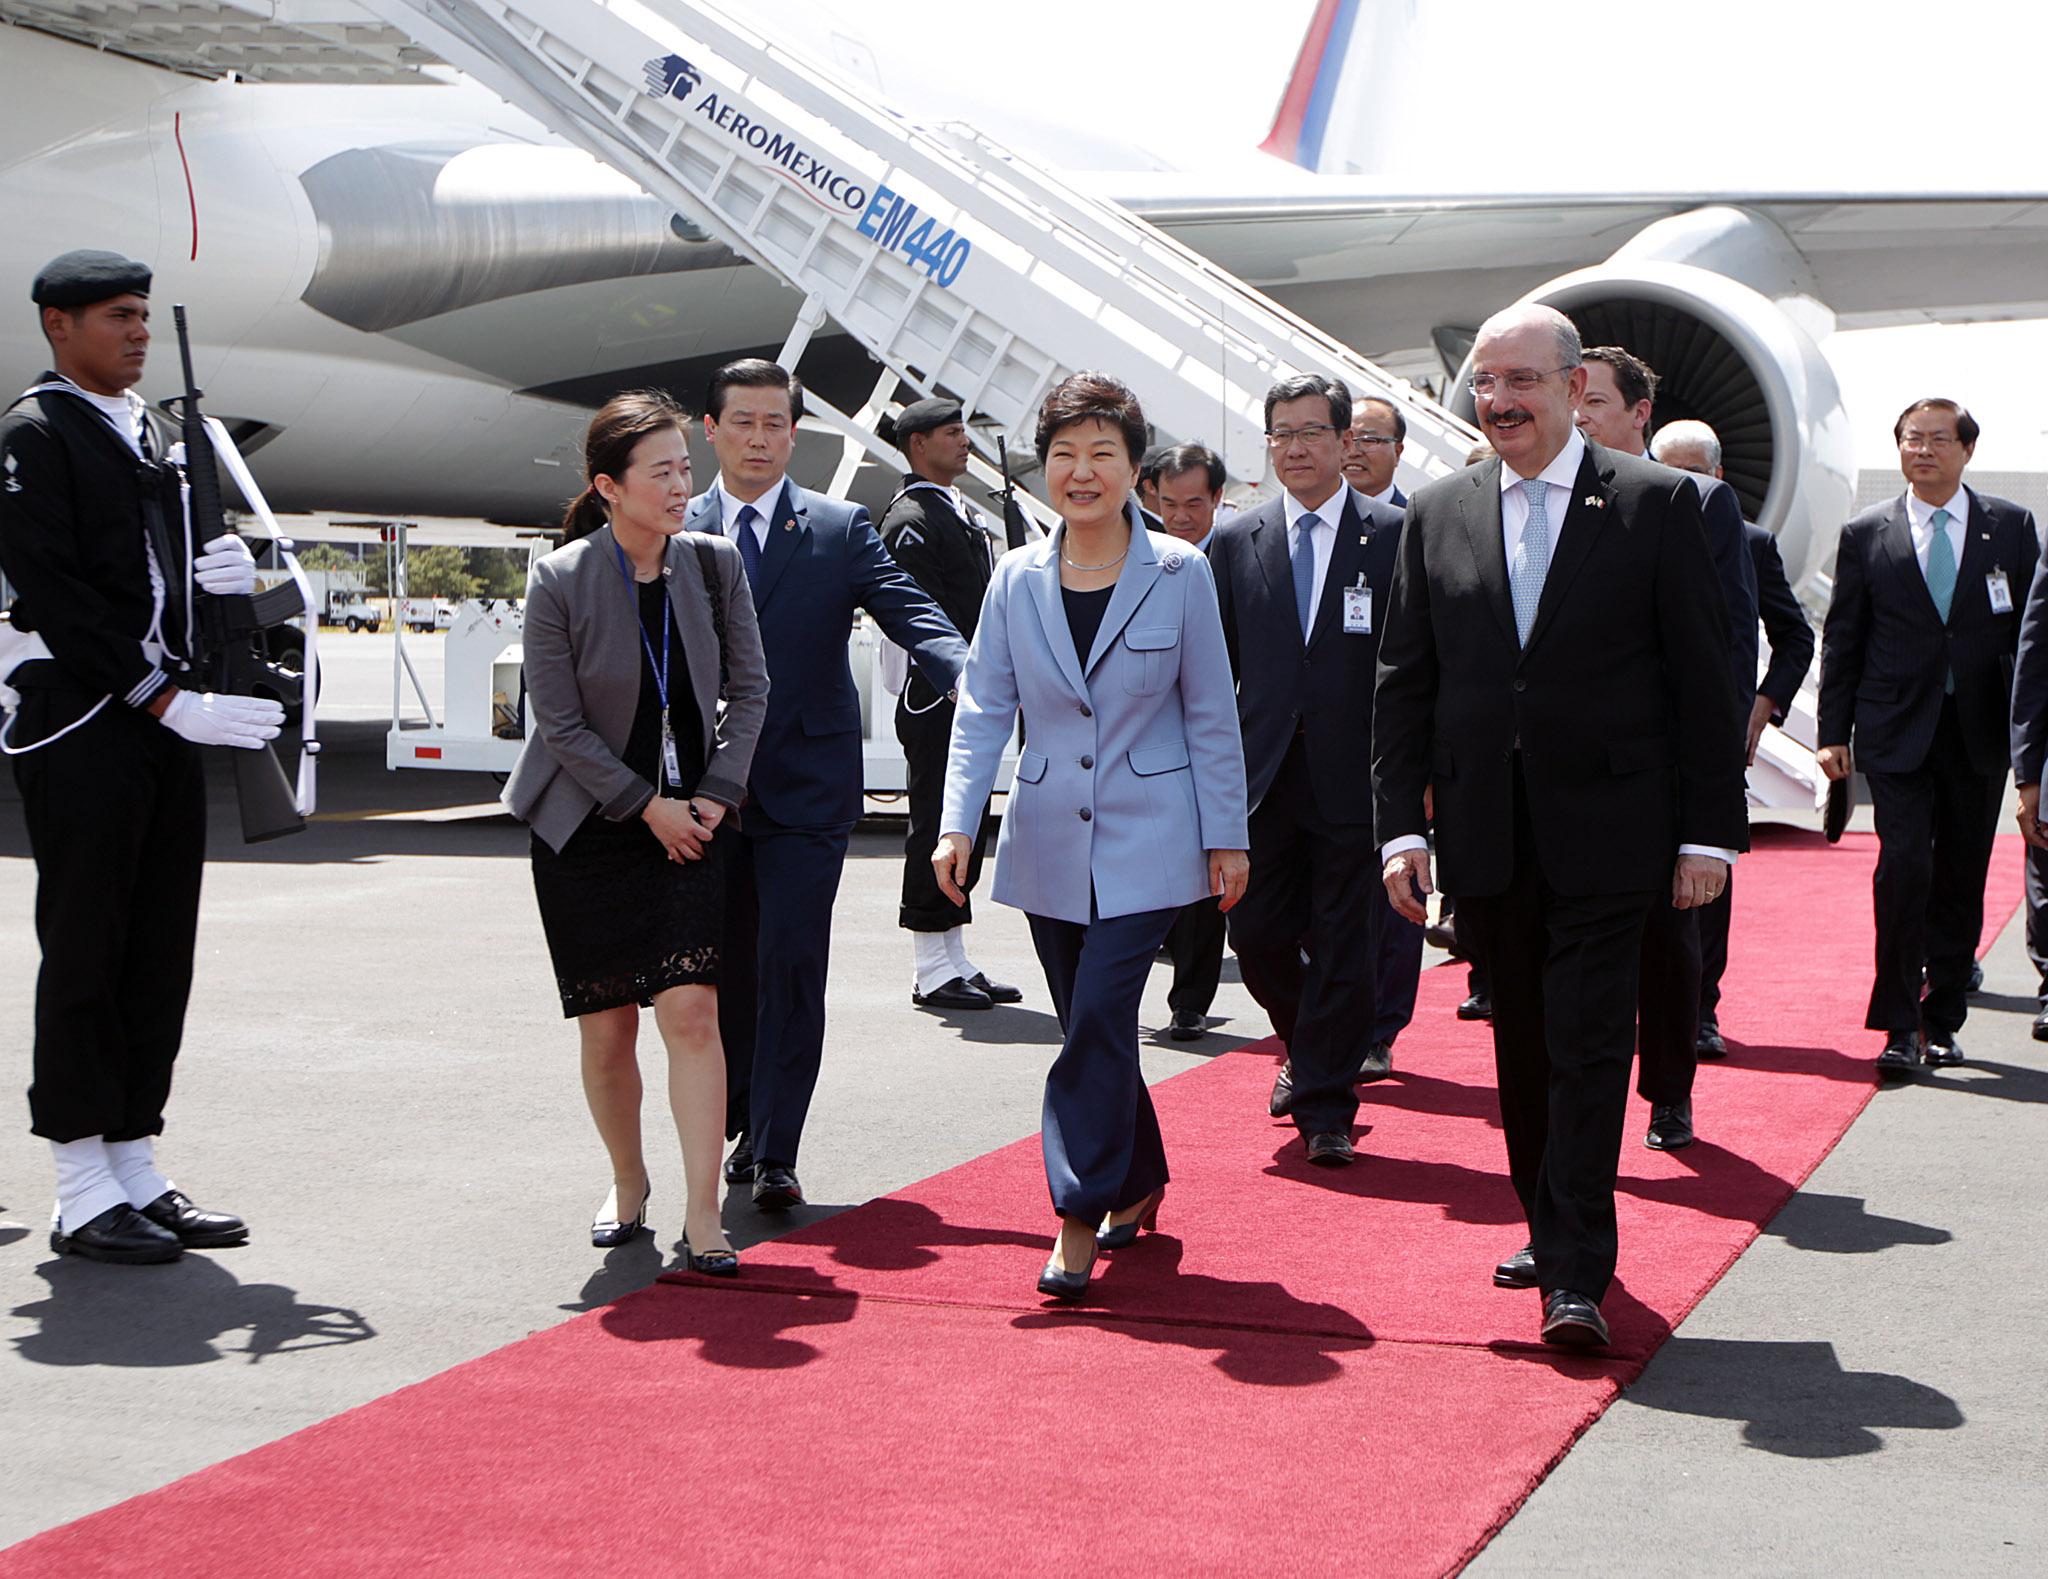 FOTO 2 Arribo de la Presidenta de la Rep blica de Corea  Excma Sra Park Geun hyejpg